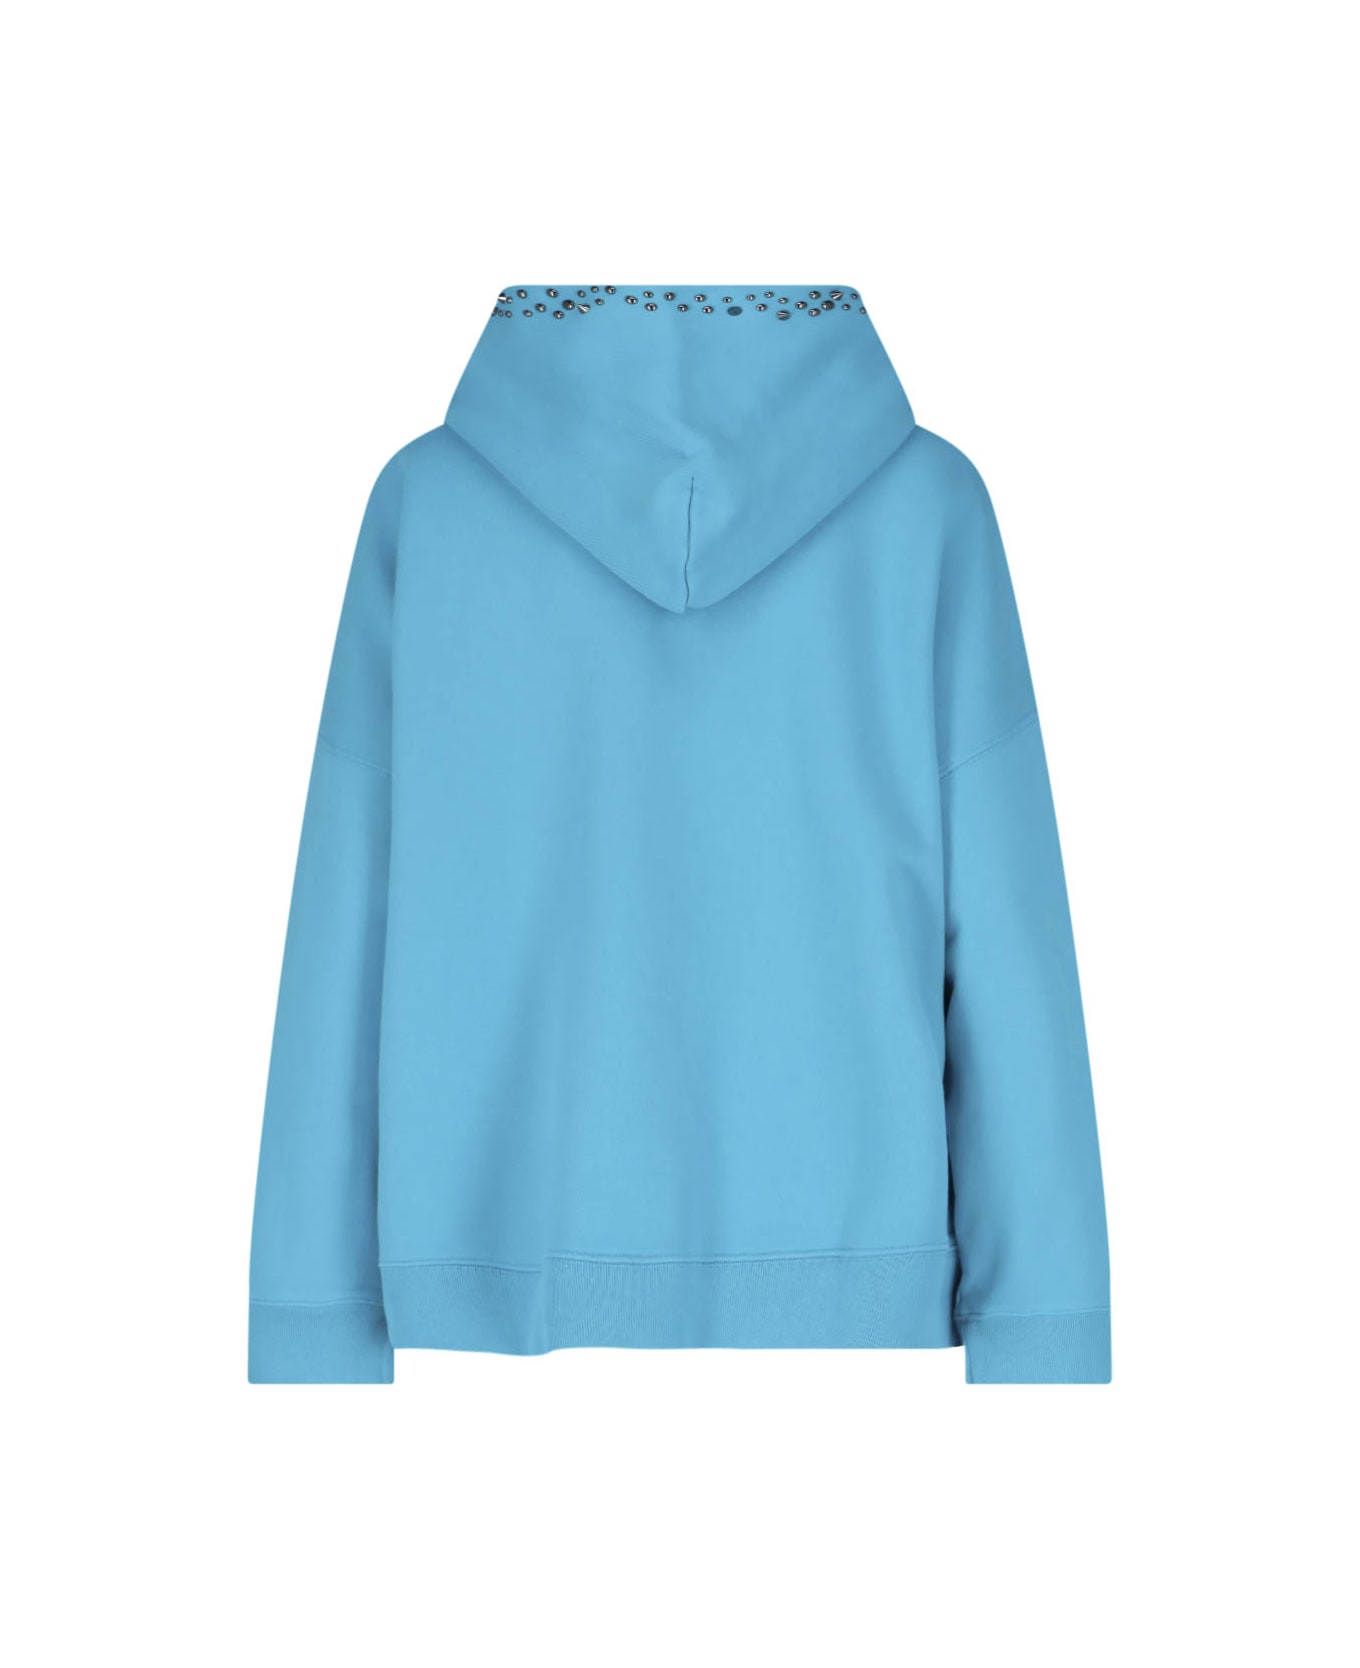 Versace Sweater - Light blue